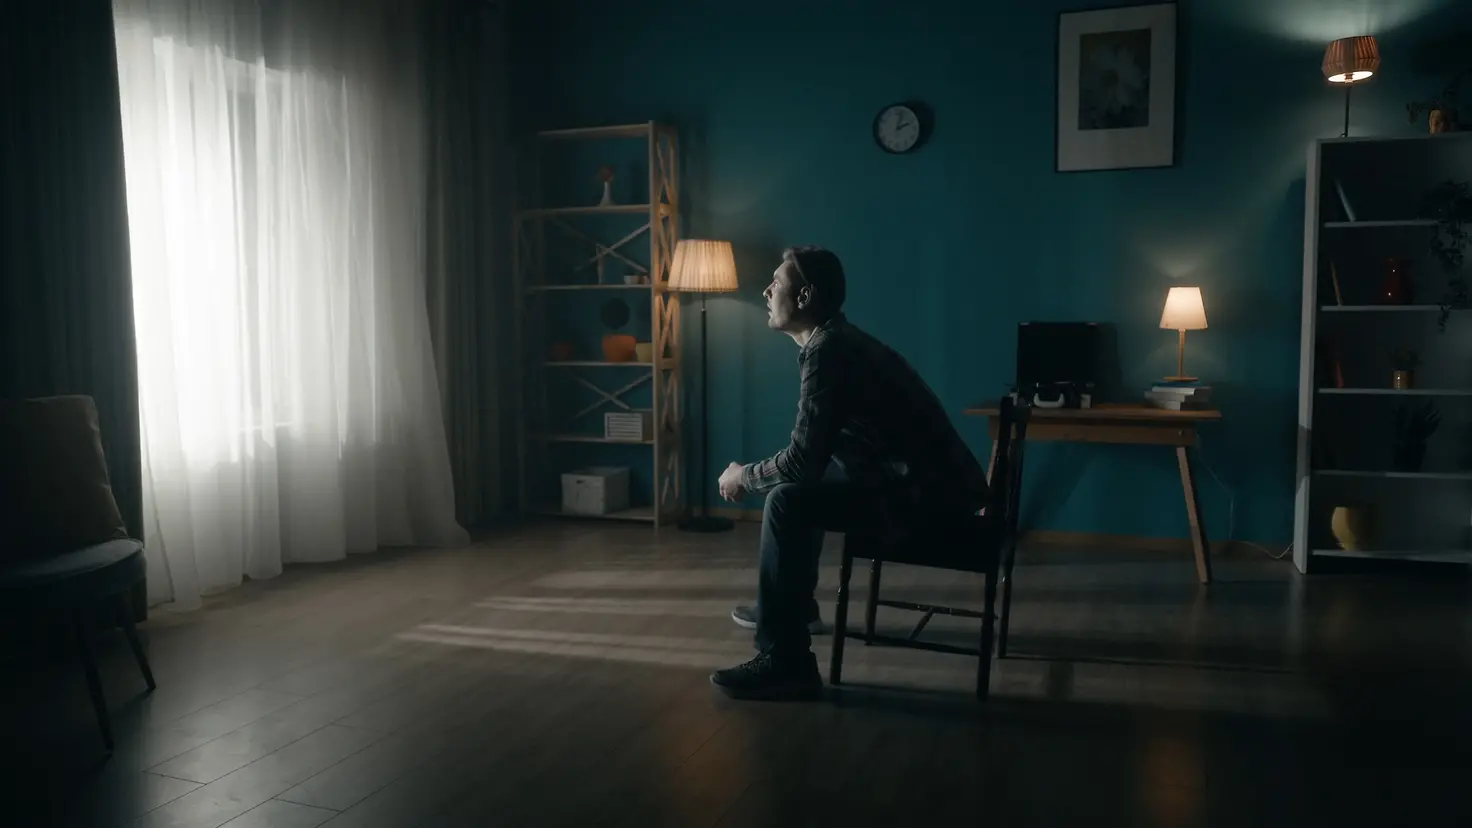 Zu sehen ist ein einsamer Mann, der in einem dunklen Zimmer sitzt und zum gardinenverhangenen Fenster sieht